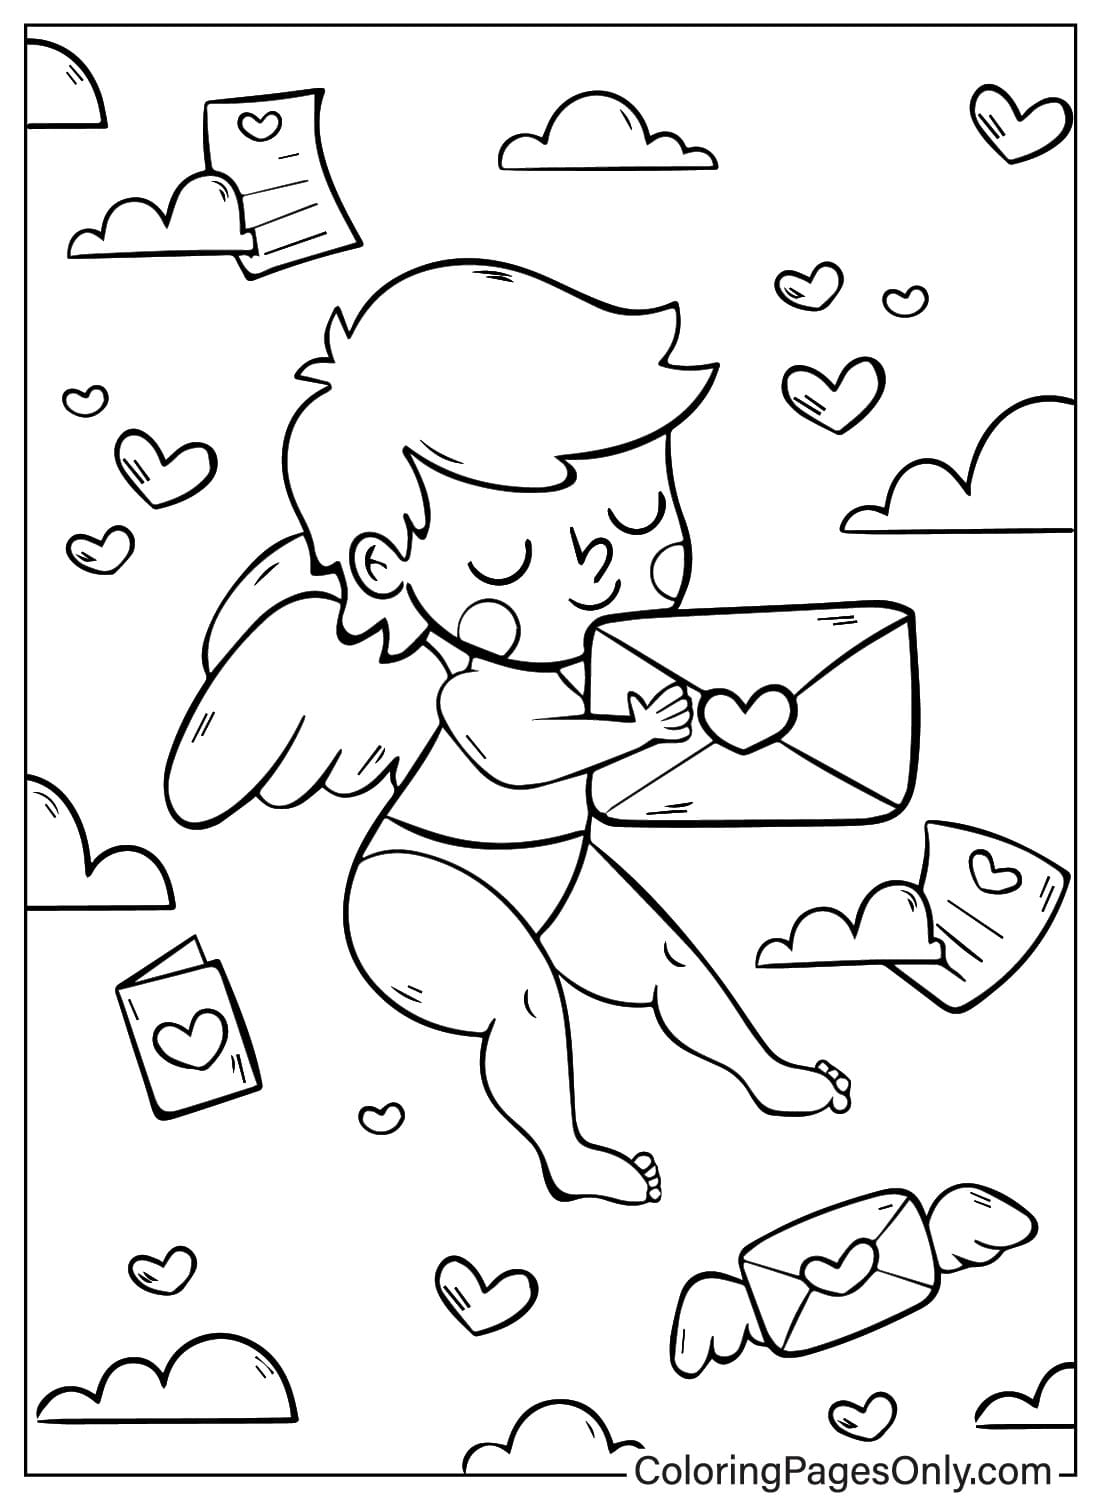 Página para colorear imprimible de Cupido de Cupido